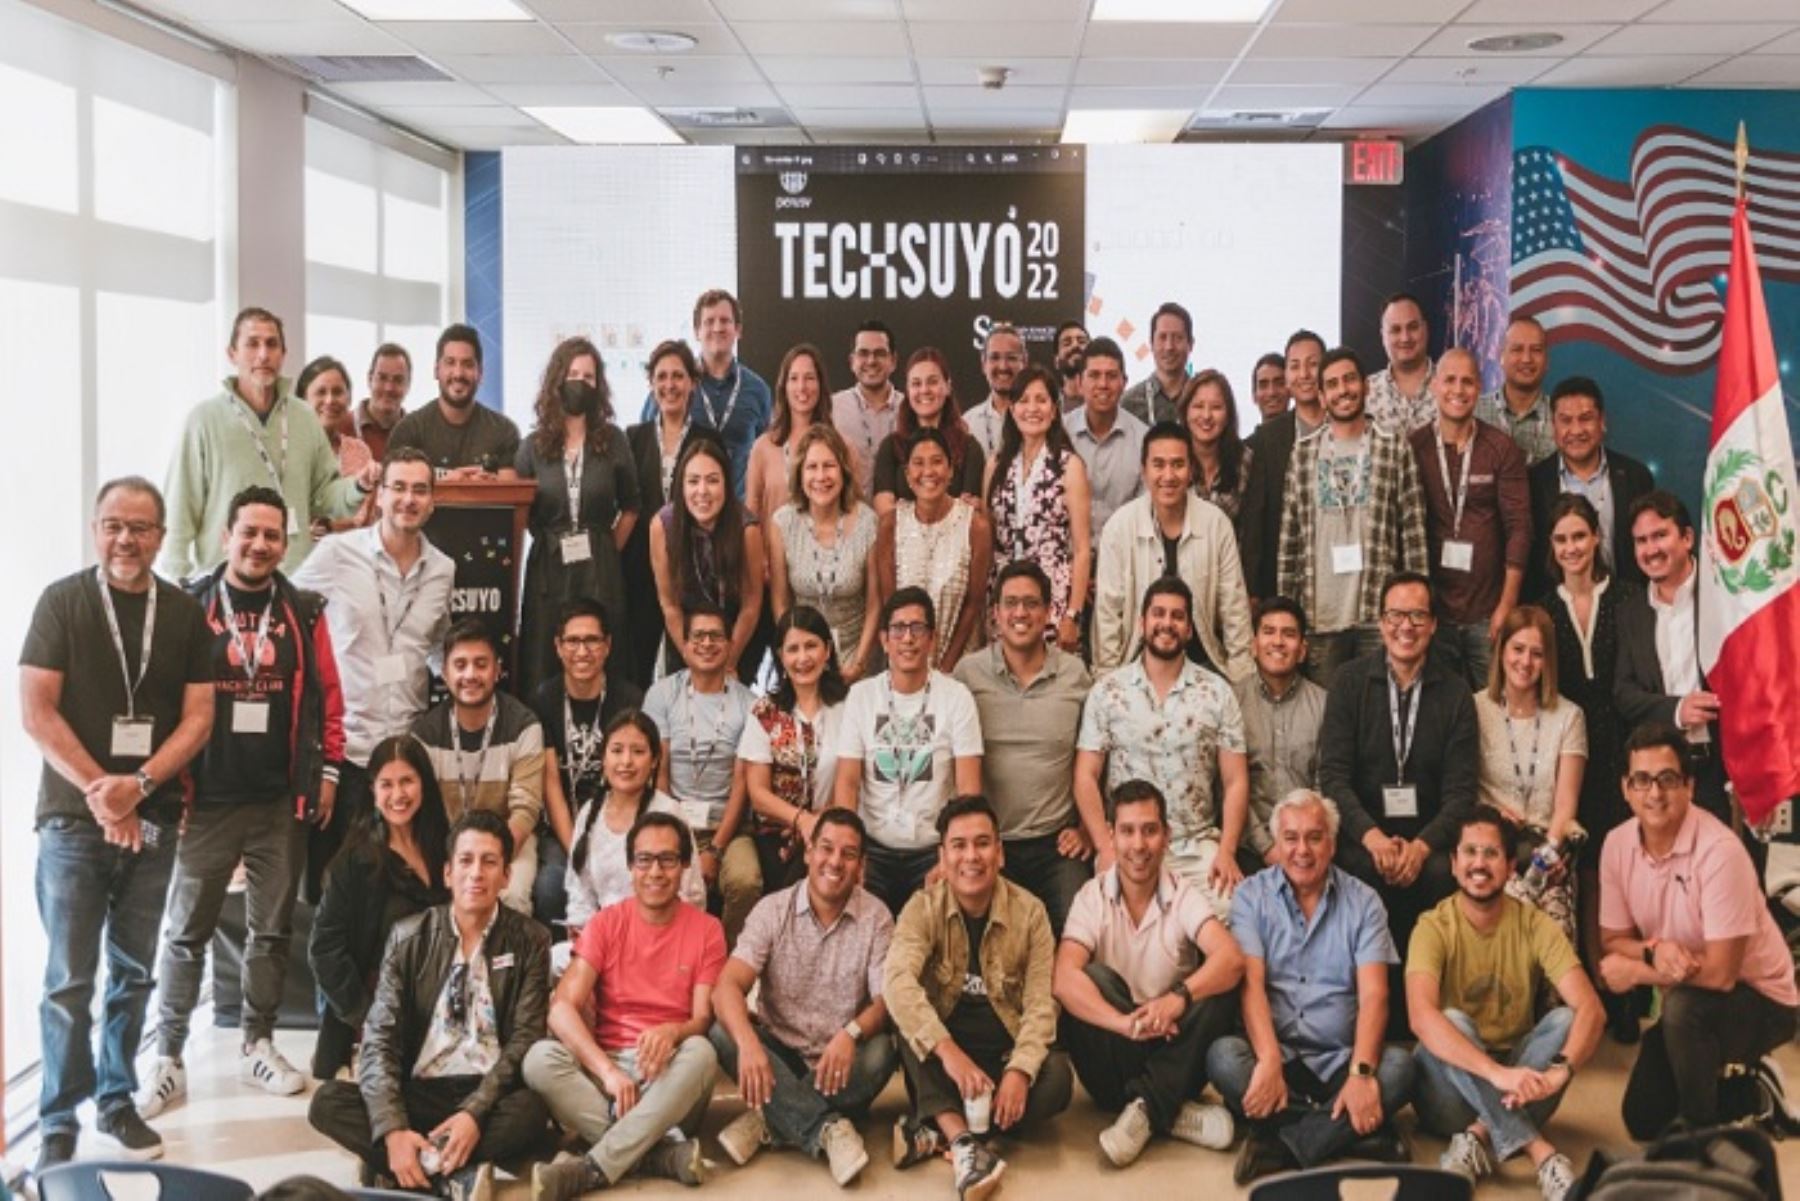 El encuentro tecnológico se llevará a cabo en la Universidad San Pablo de Arequipa los días 6 y 7 de setiembre.